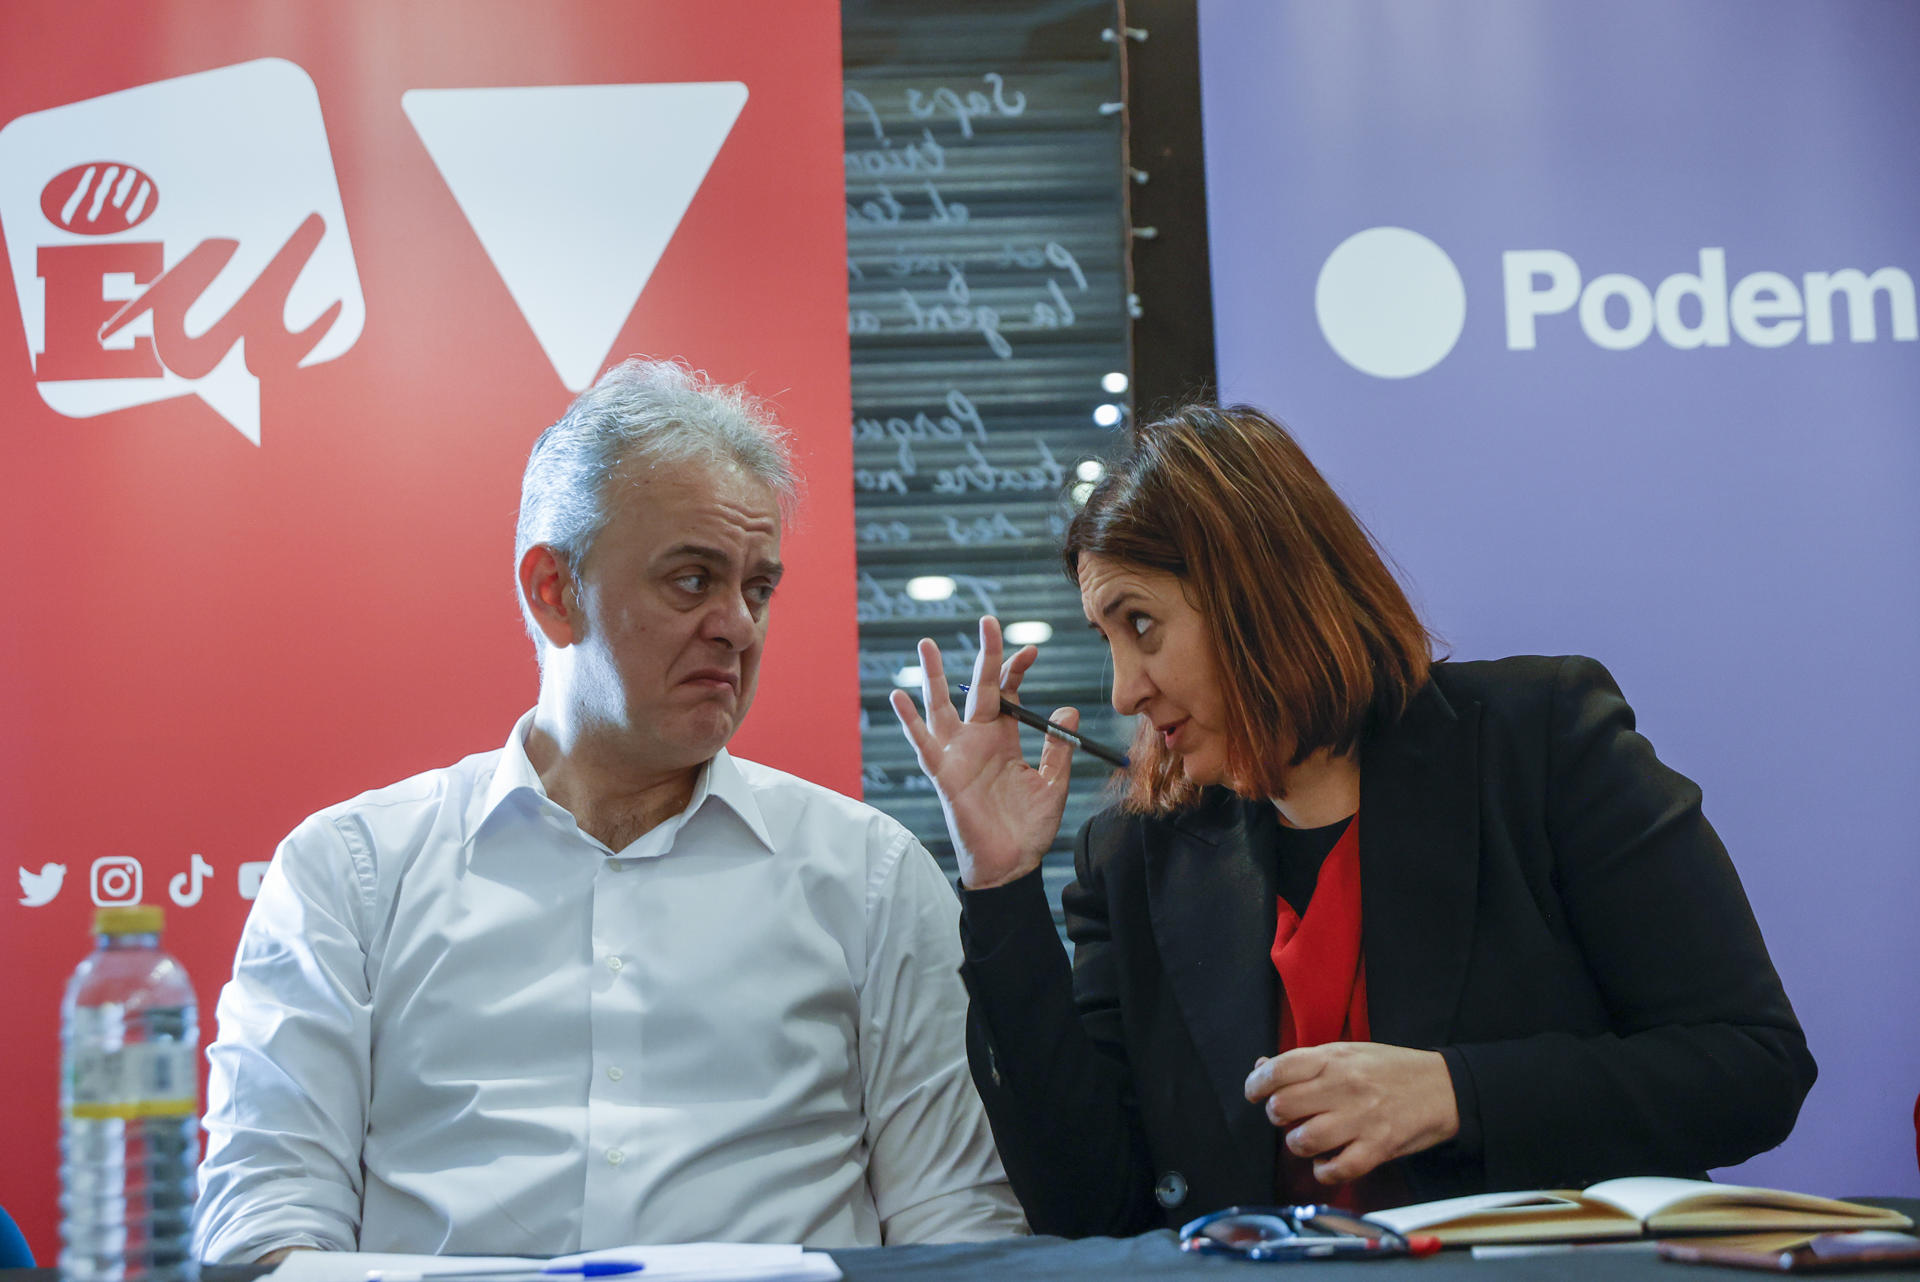 Podem y Esquerra Unida ofrecen una rueda de prensa con motivo de las elecciones del 28 de mayo, con asistencia de los consellers Héctor Illueca (I) y Rosa Pérez (D), entre otros, para tratar sobre la renovación de su alianza electoral. EFE/Kai Försterling